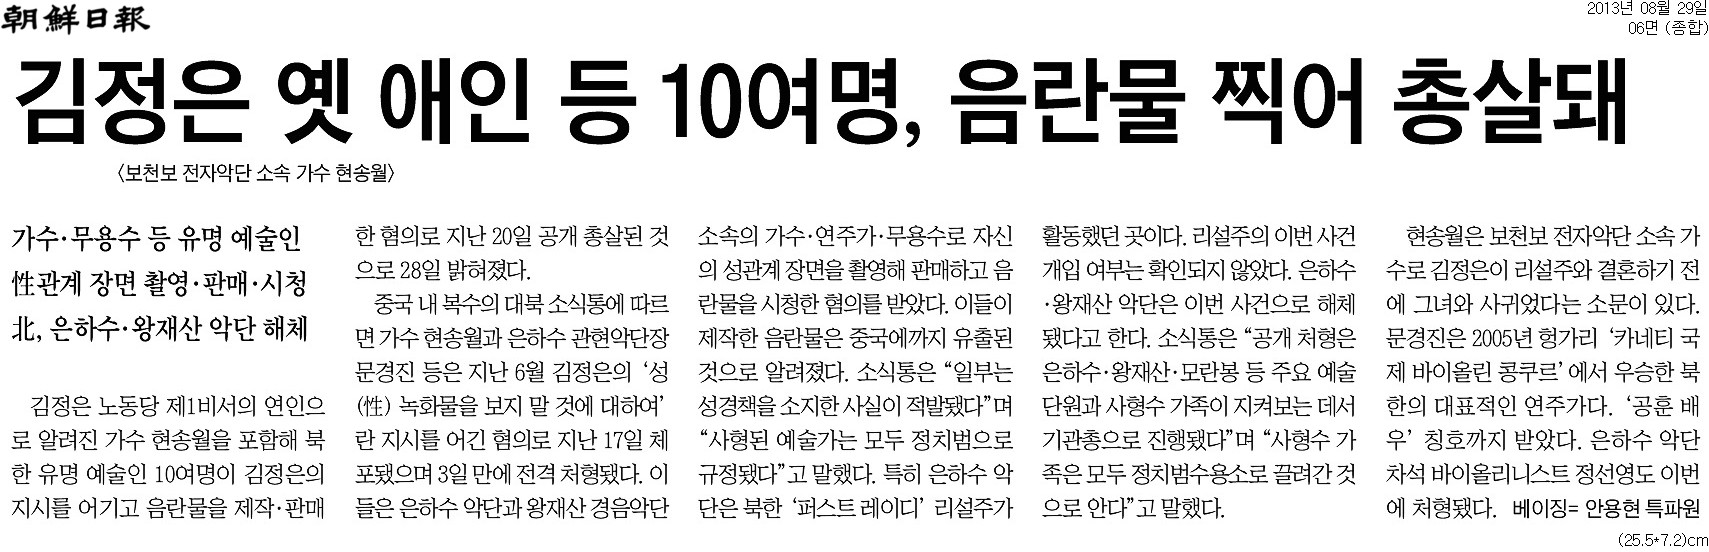 2013년 8월29일자. 조선일보 6면.